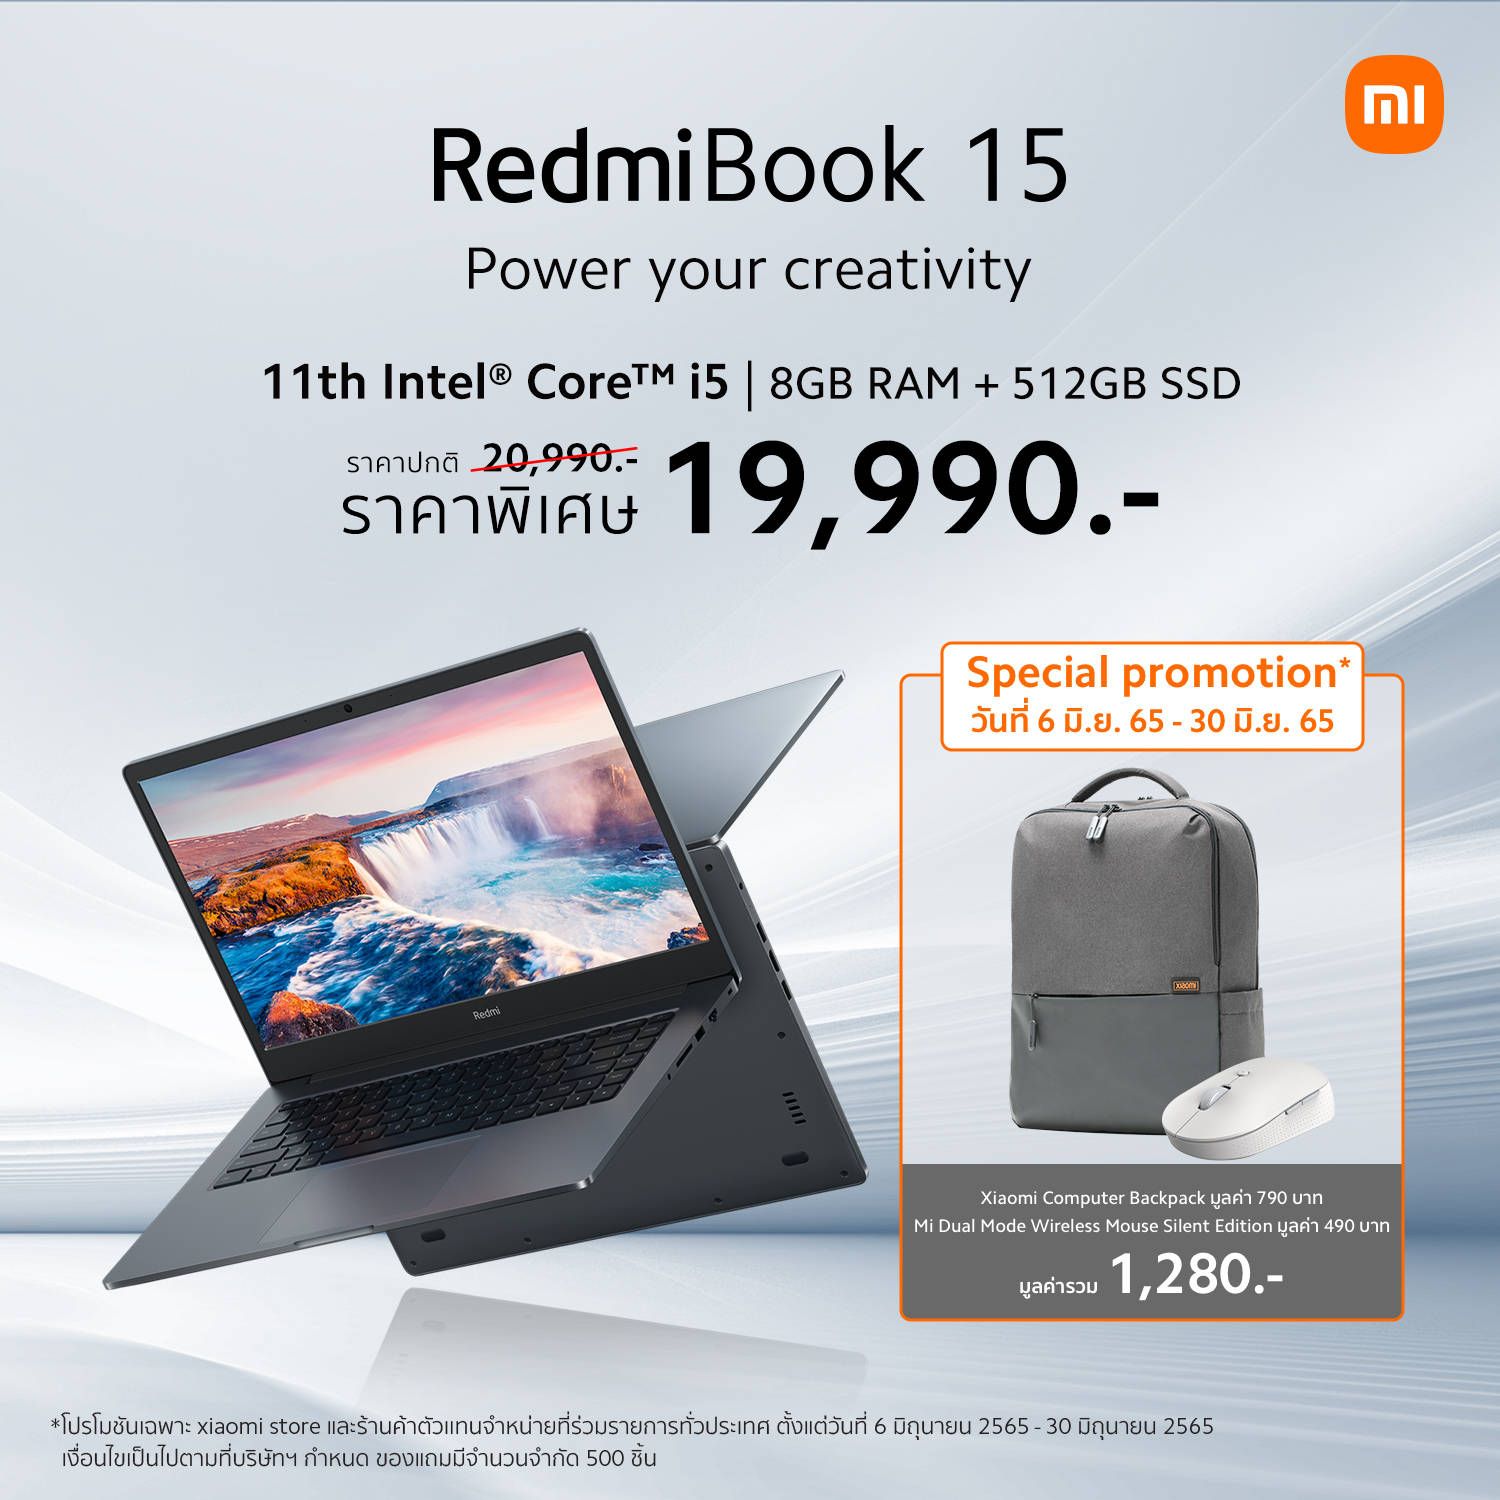 เปิดตัว RedmiBook 15 โน้ตบุ๊คที่มากับ 11th Intel Core ราคาพิเศษเริ่มต้นเบา ๆ เพียง 13,990 บาท